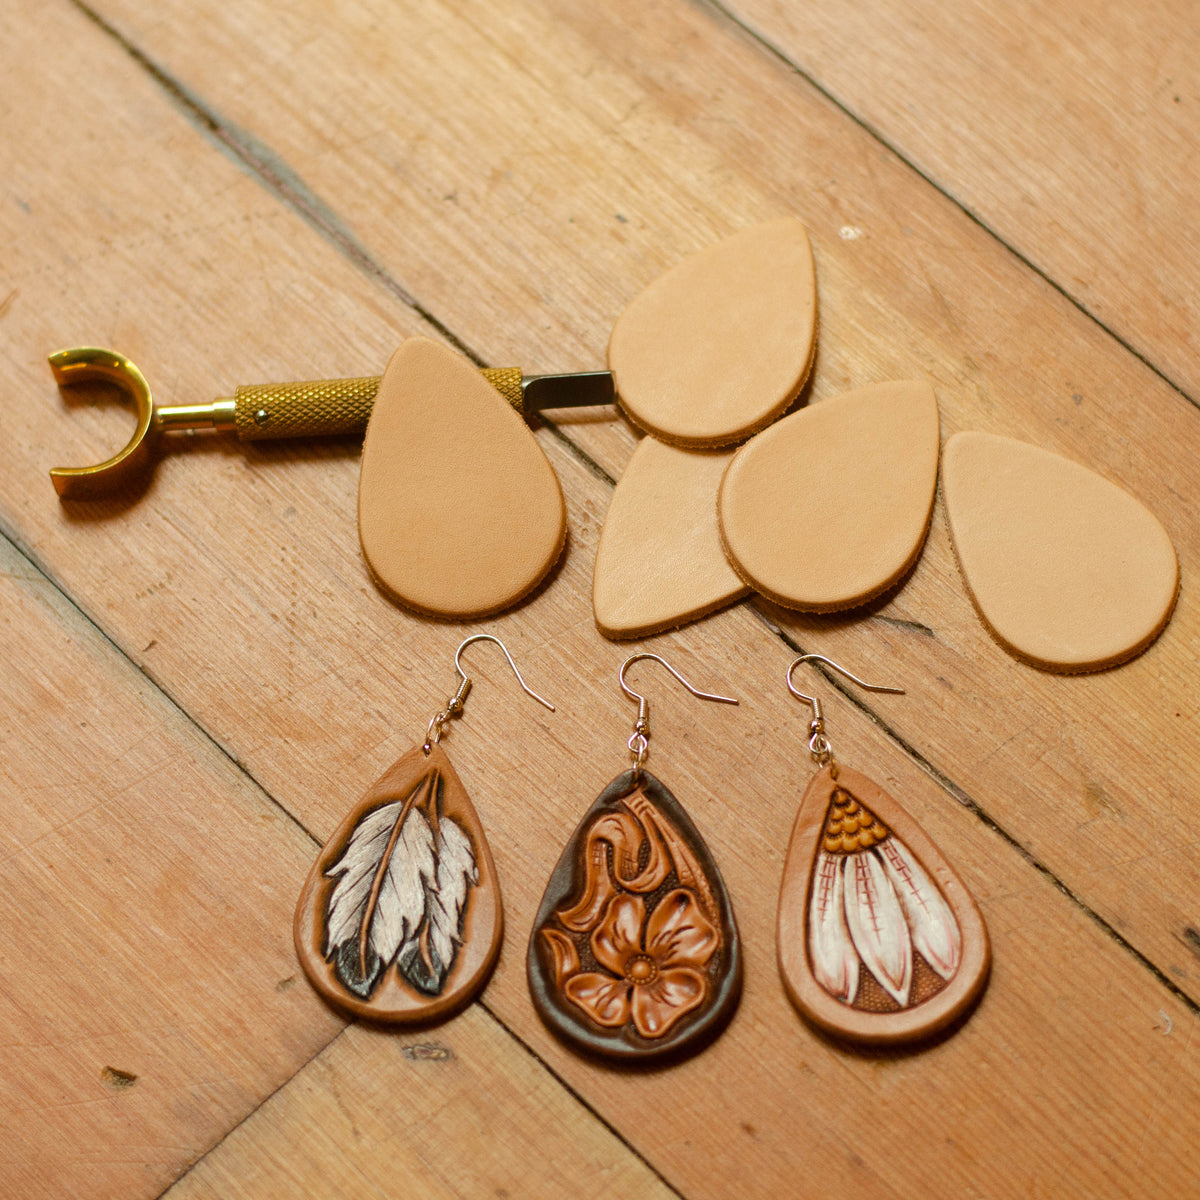 Tear Drop Earring Kit - Weaver Leather Supply